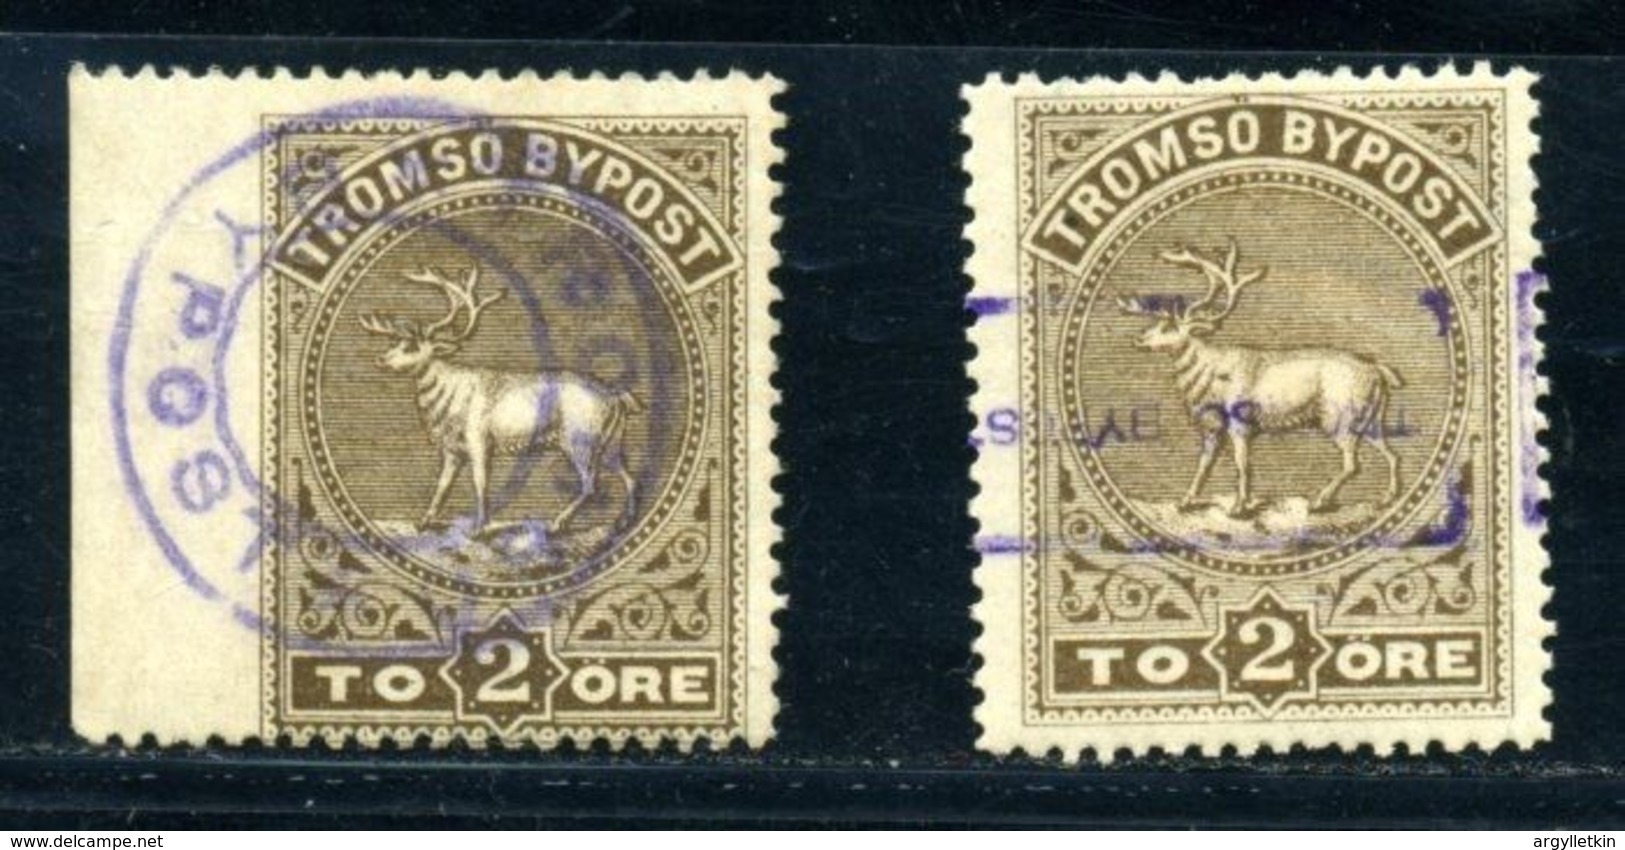 NORWAY/ARCTIC/REINDEER 1882 - Local Post Stamps